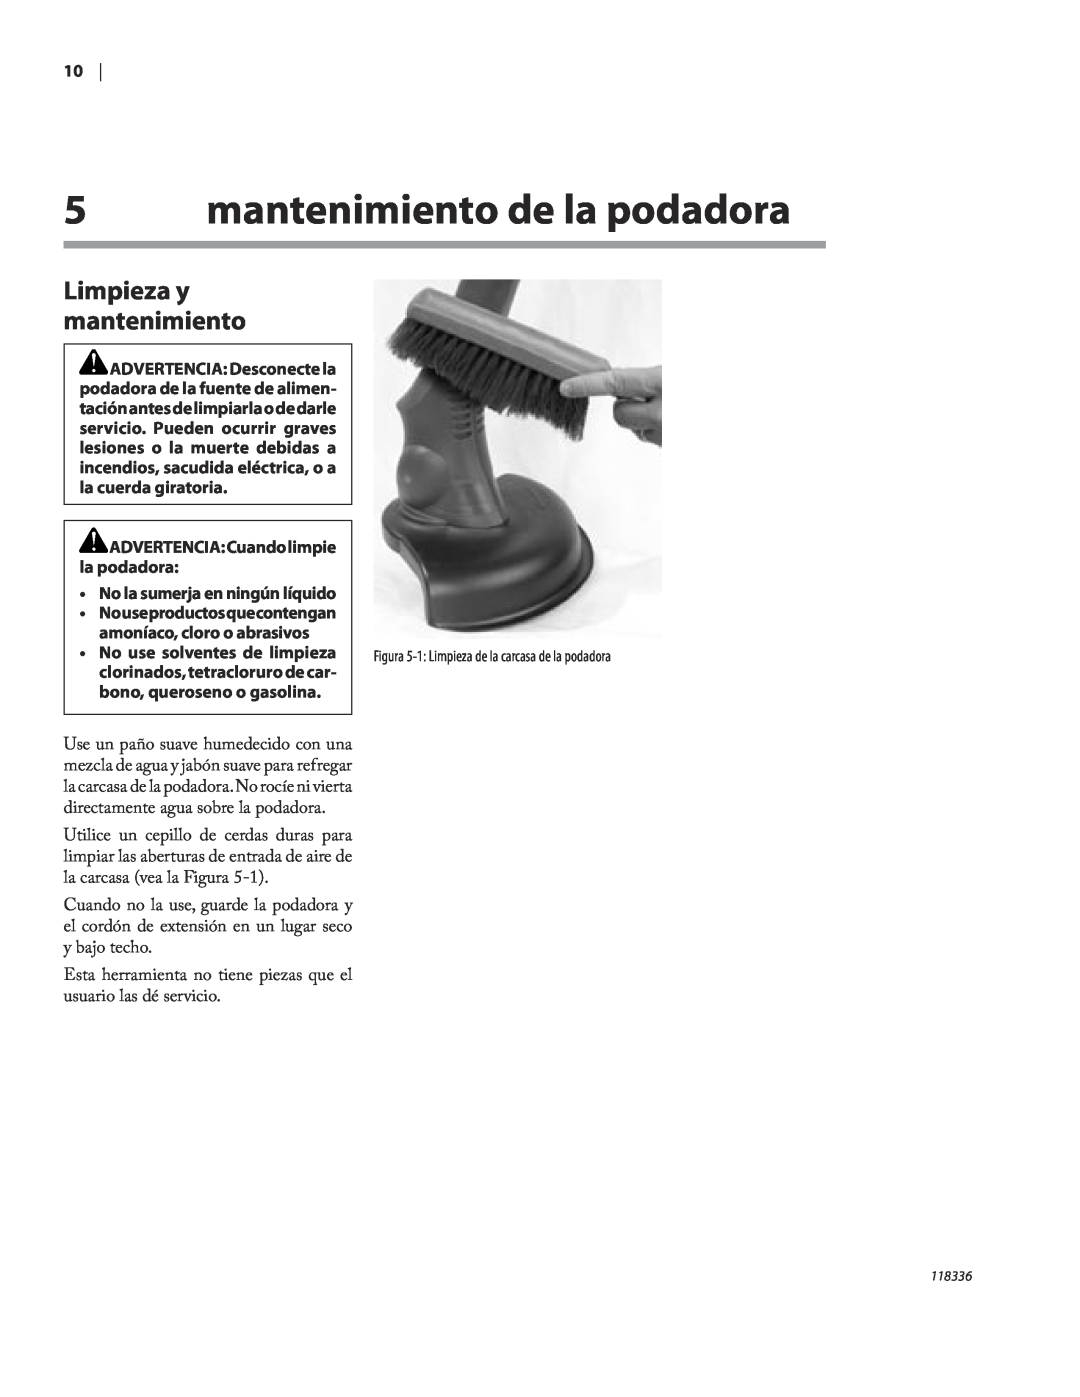 Remington ST3010A owner manual mantenimiento de la podadora, Limpieza y mantenimiento, ADVERTENCIA Cuandolimpie la podadora 